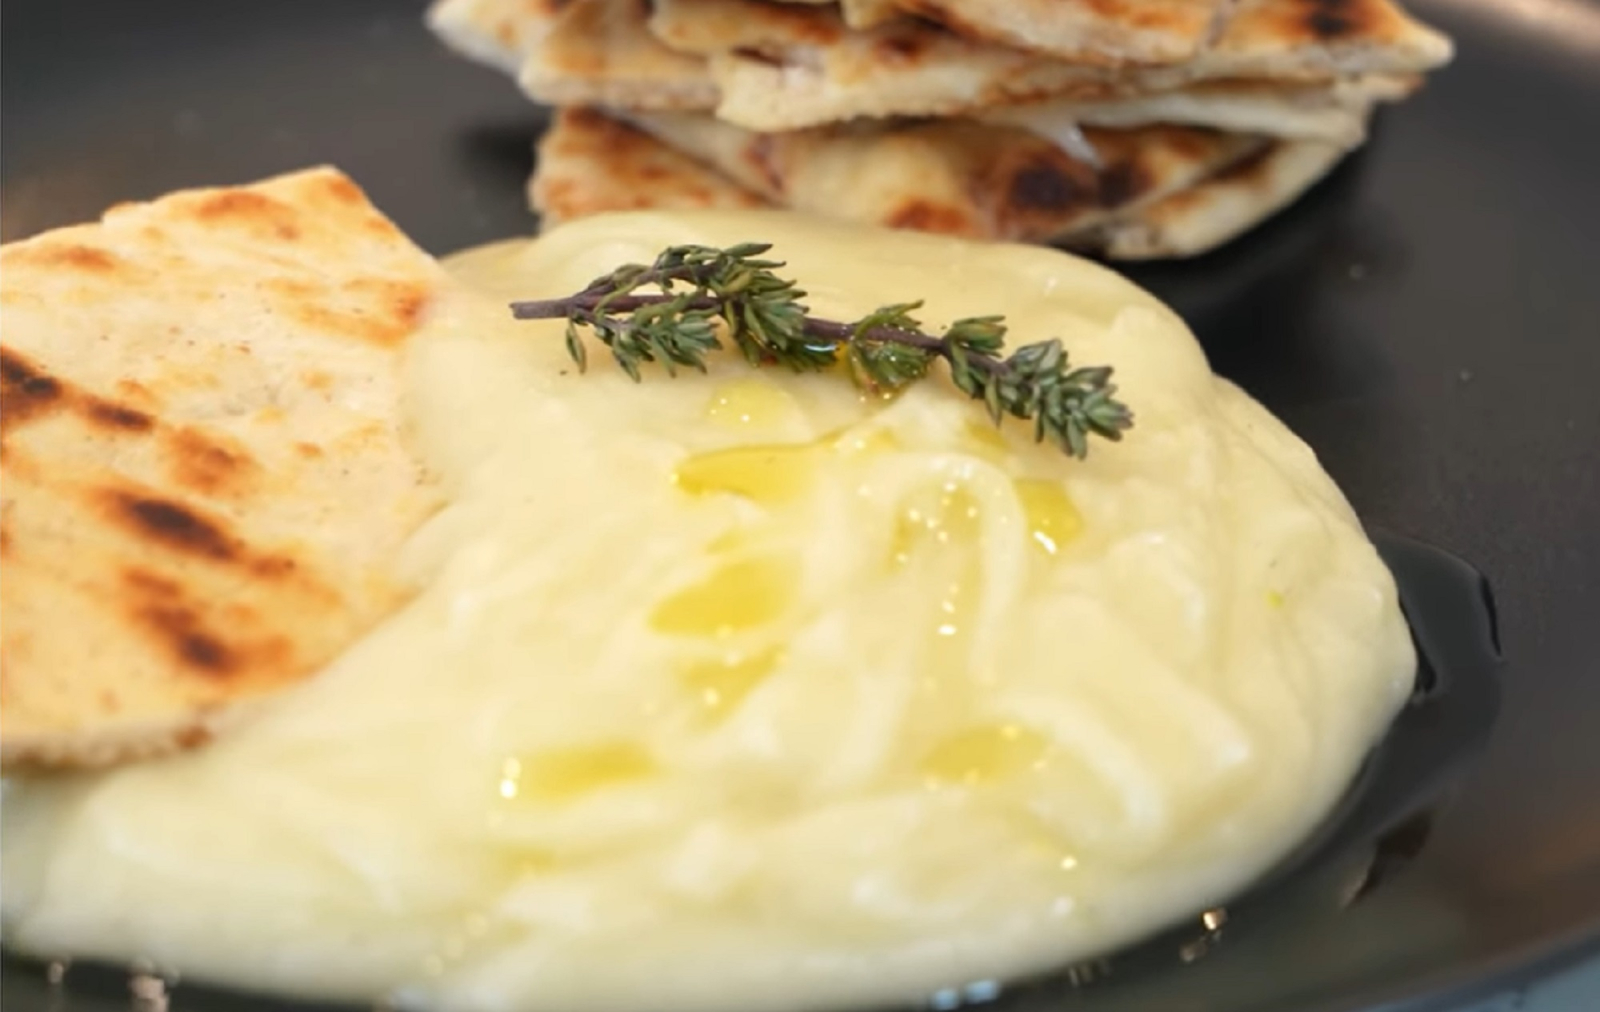 Σκορδαλιά, νόστιμο ελληνικό άλειμμα πατάτας και σκόρδου.  Πολύ γρήγορη συνταγή για ένα εξωτικό απεριτίφ, εύκολο στην προετοιμασία